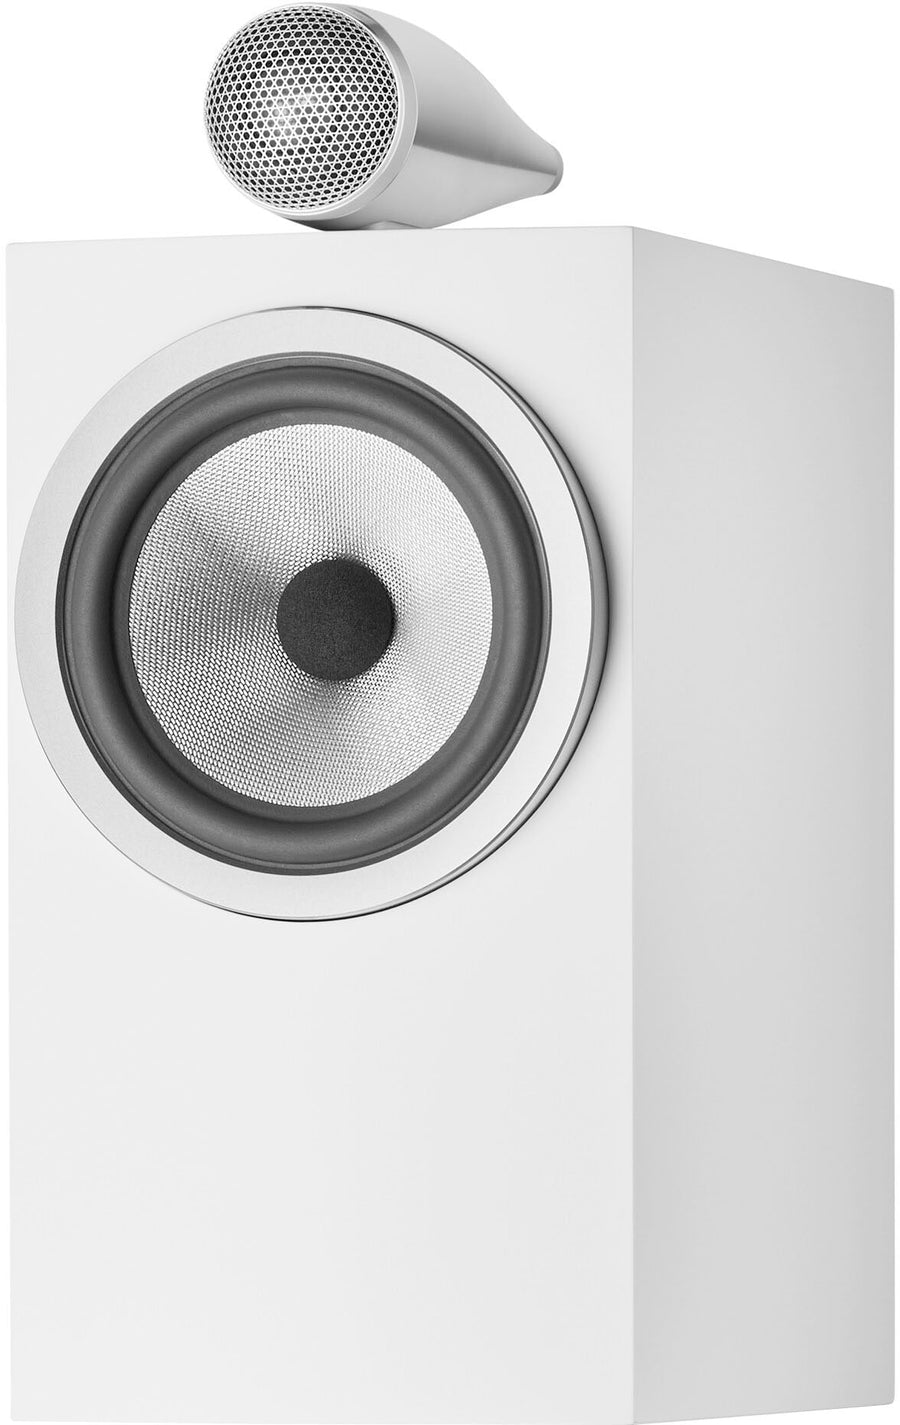 Bowers & Wilkins - 700 Series 3 Bookshelf Speaker w/ Tweeter on top, 6.5" midbass (pair) - White_0